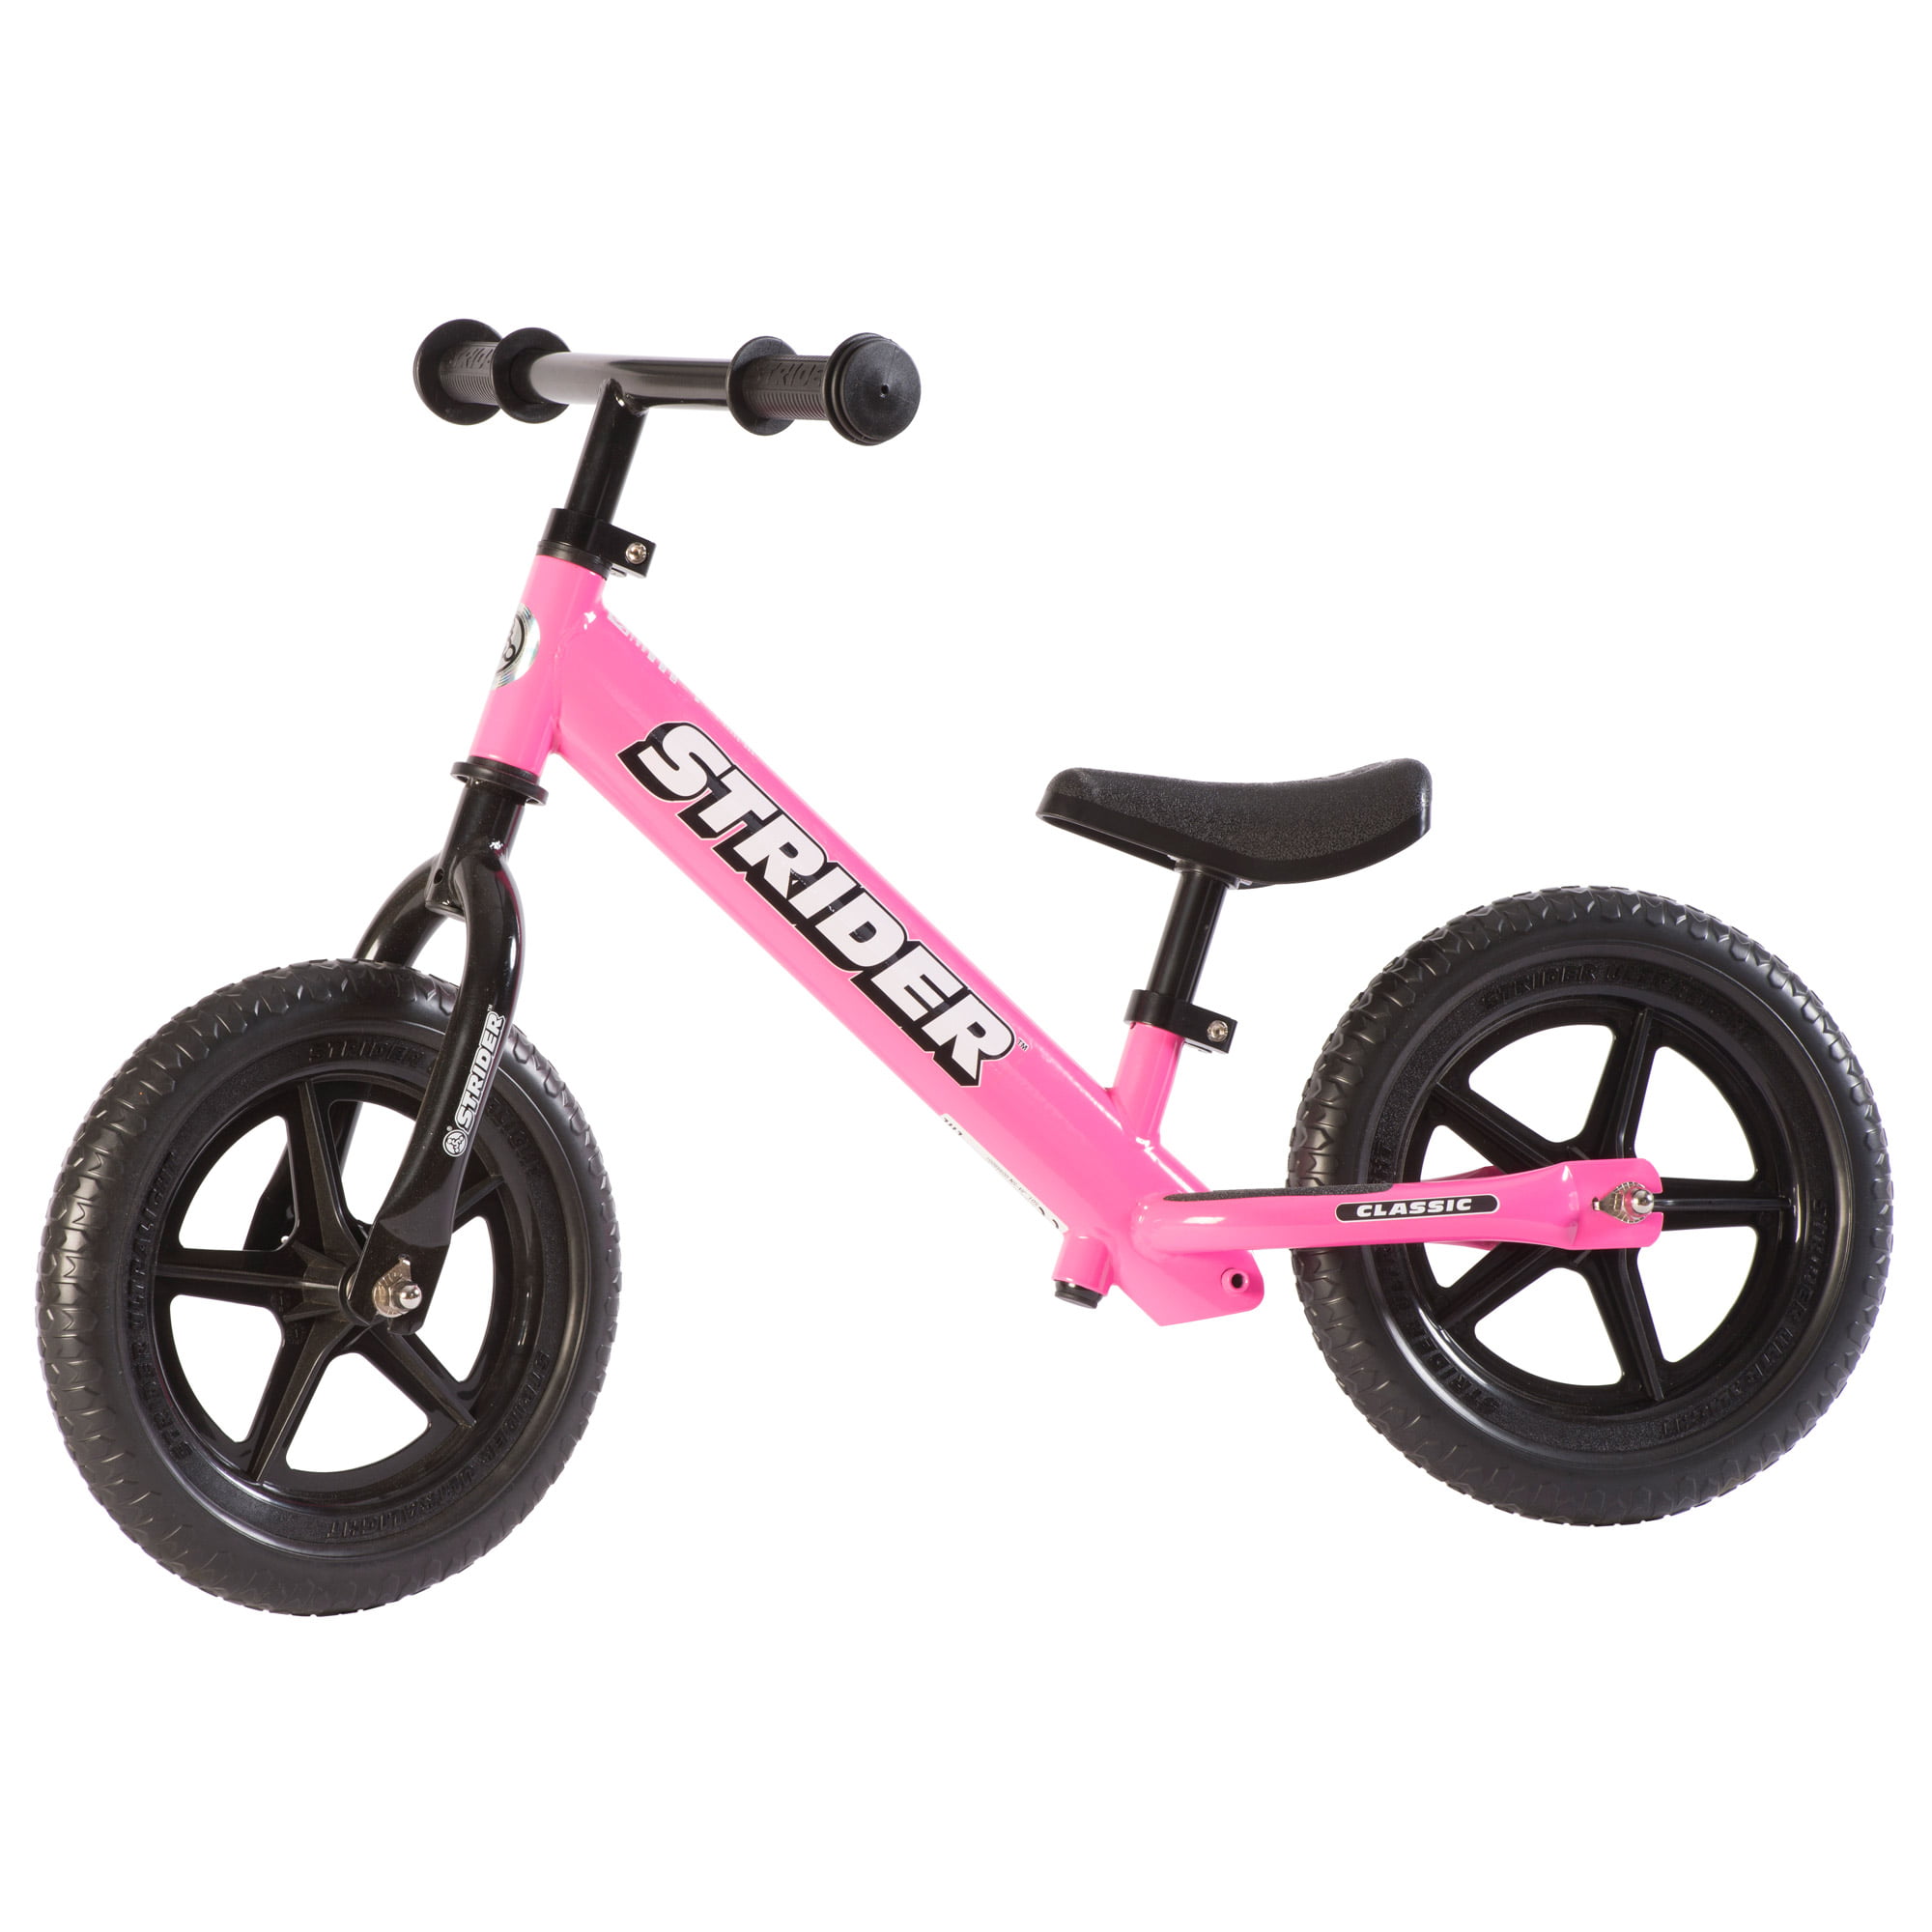 strider bike 14x pink